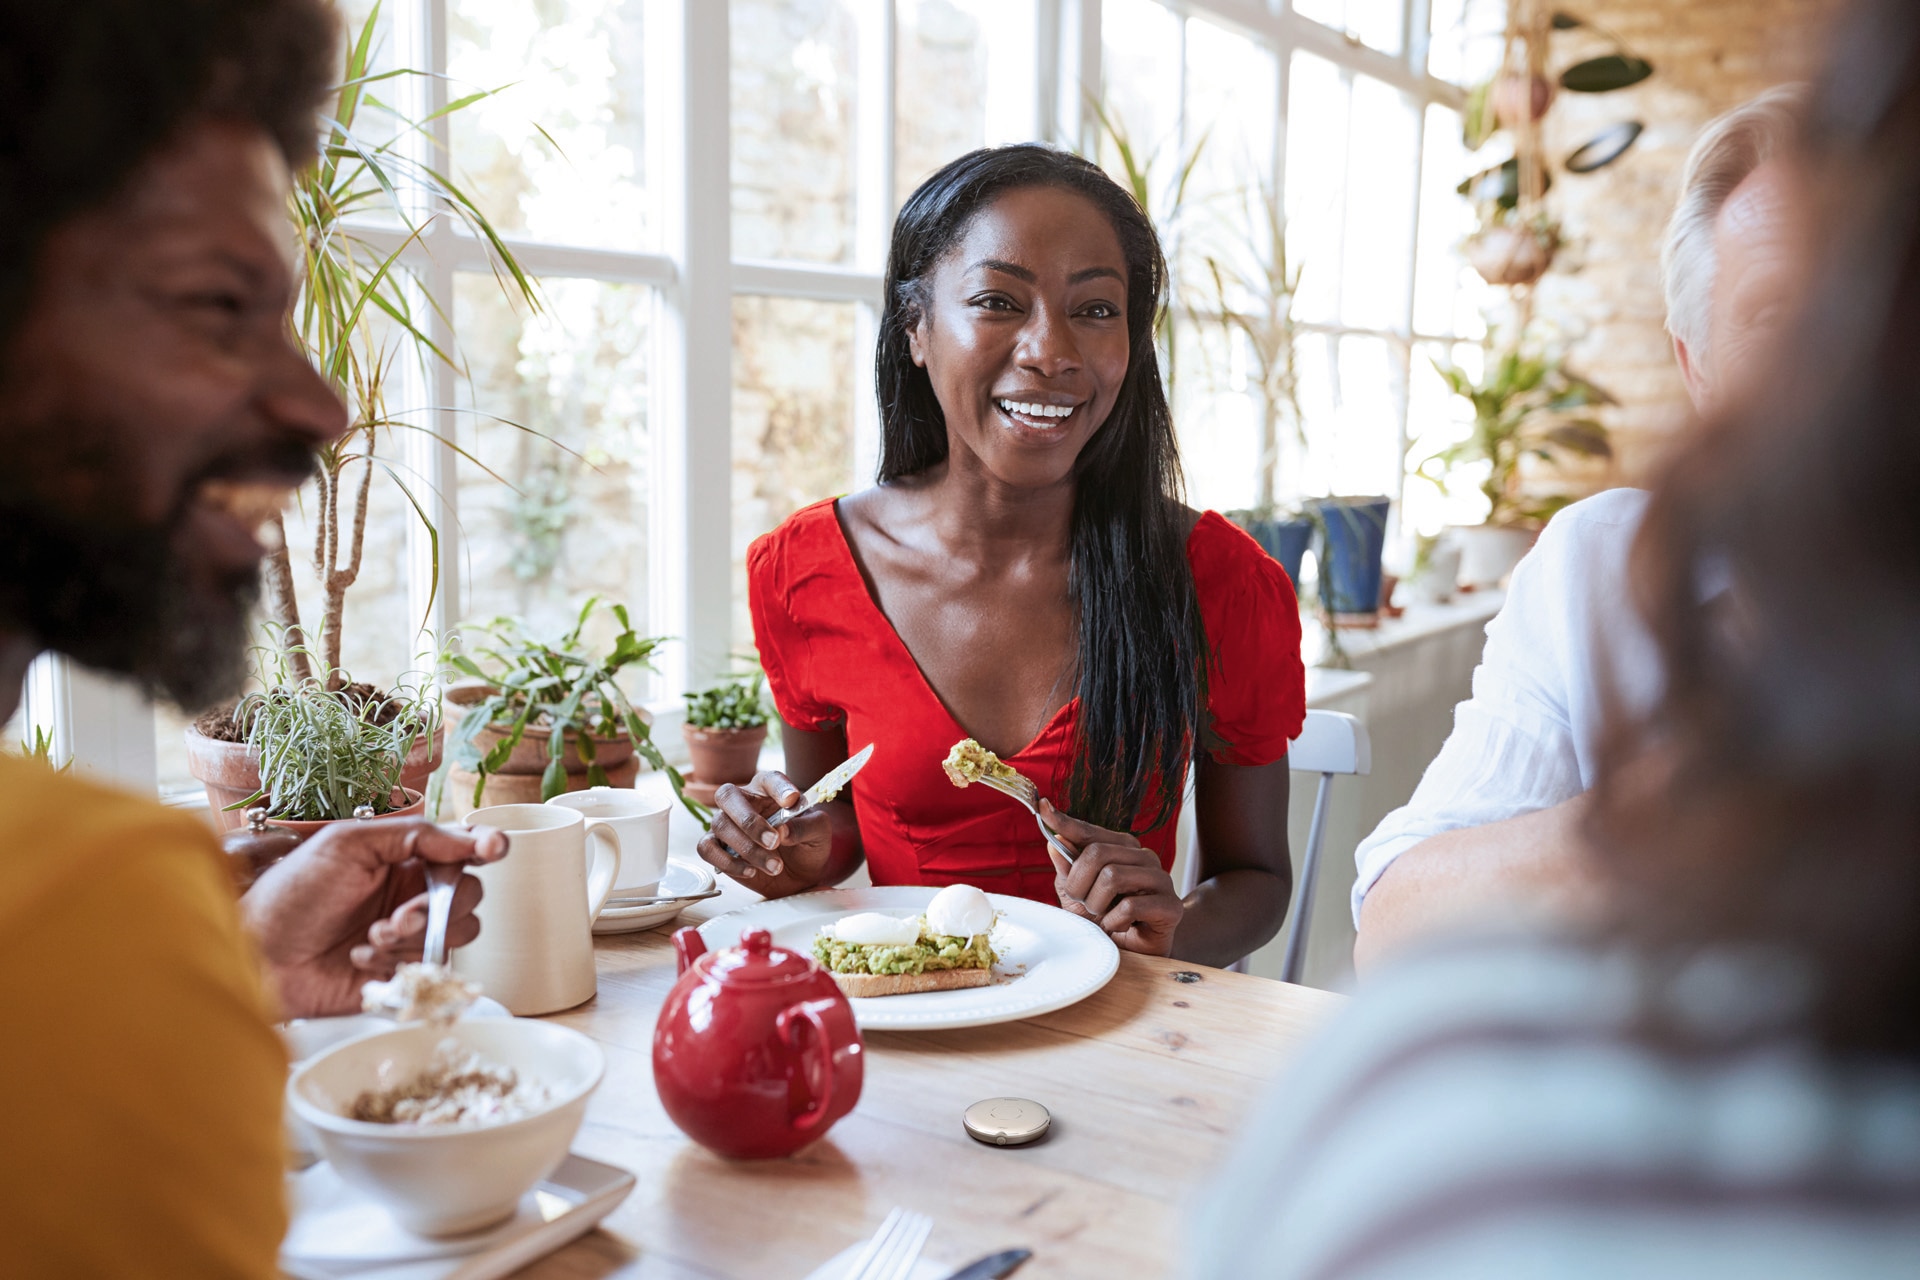 Jeune femme en bonne santé en train de manger quelque chose de sain tout en ayant une conversation agréable avec les autres personnes autour de la table. Dispositif Roger Select devant elle.